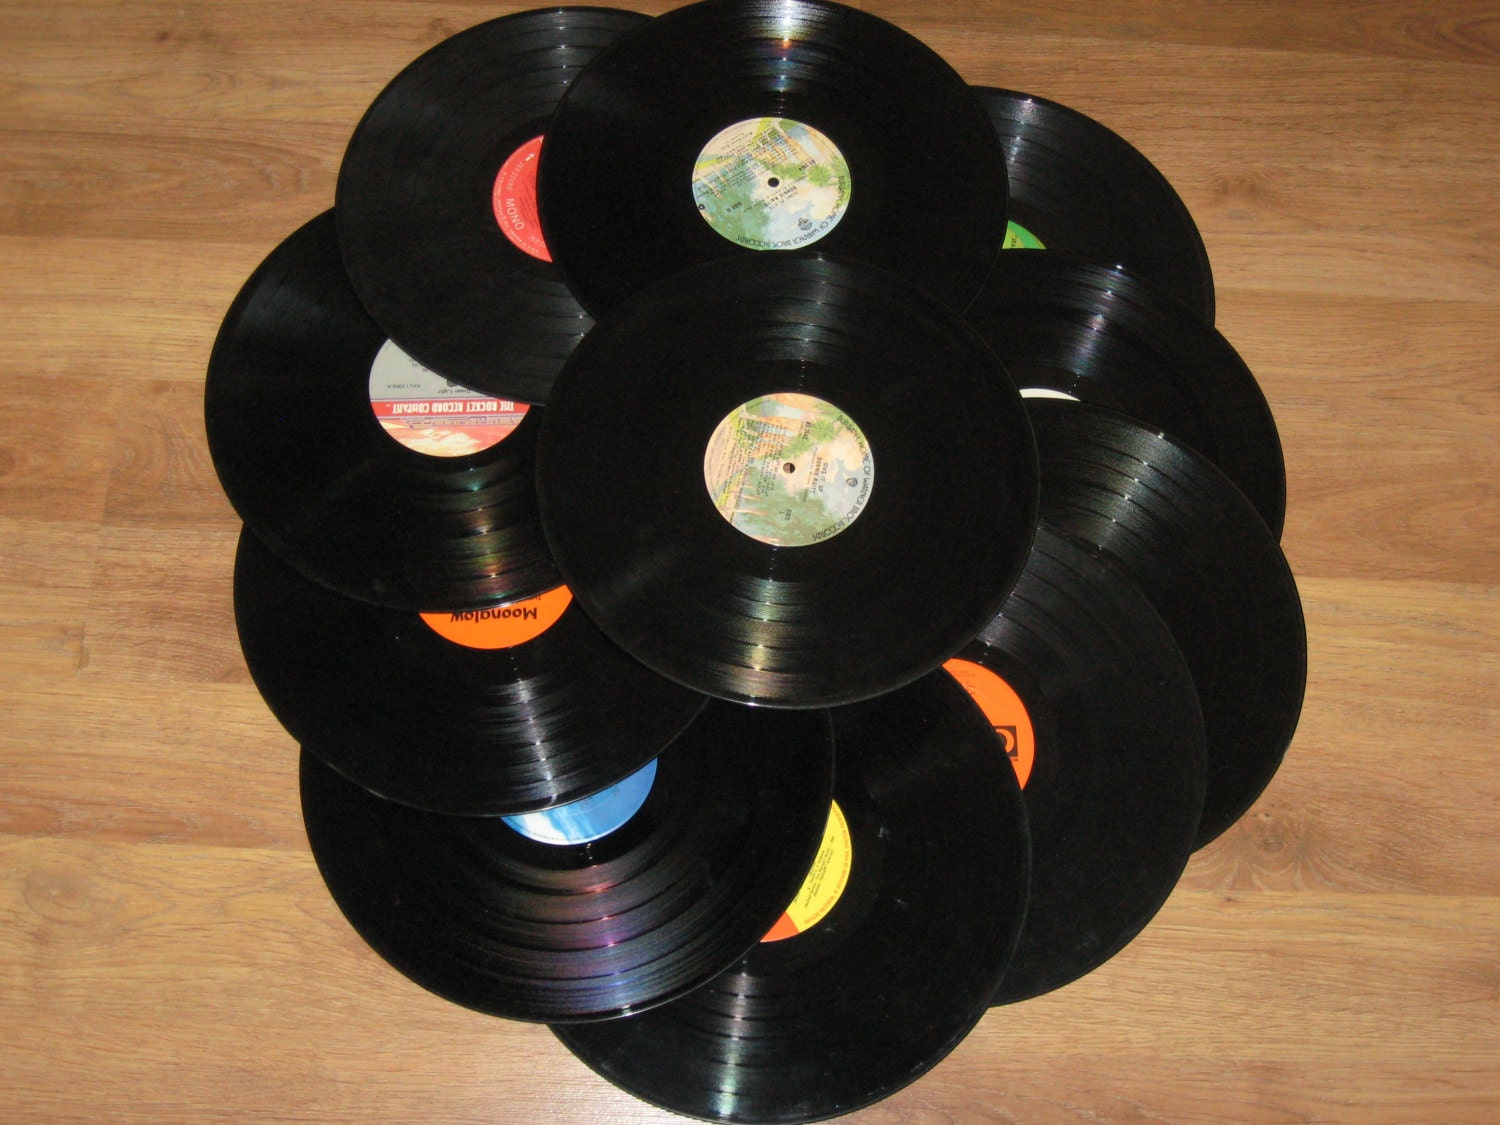 33 1 2 rpm records